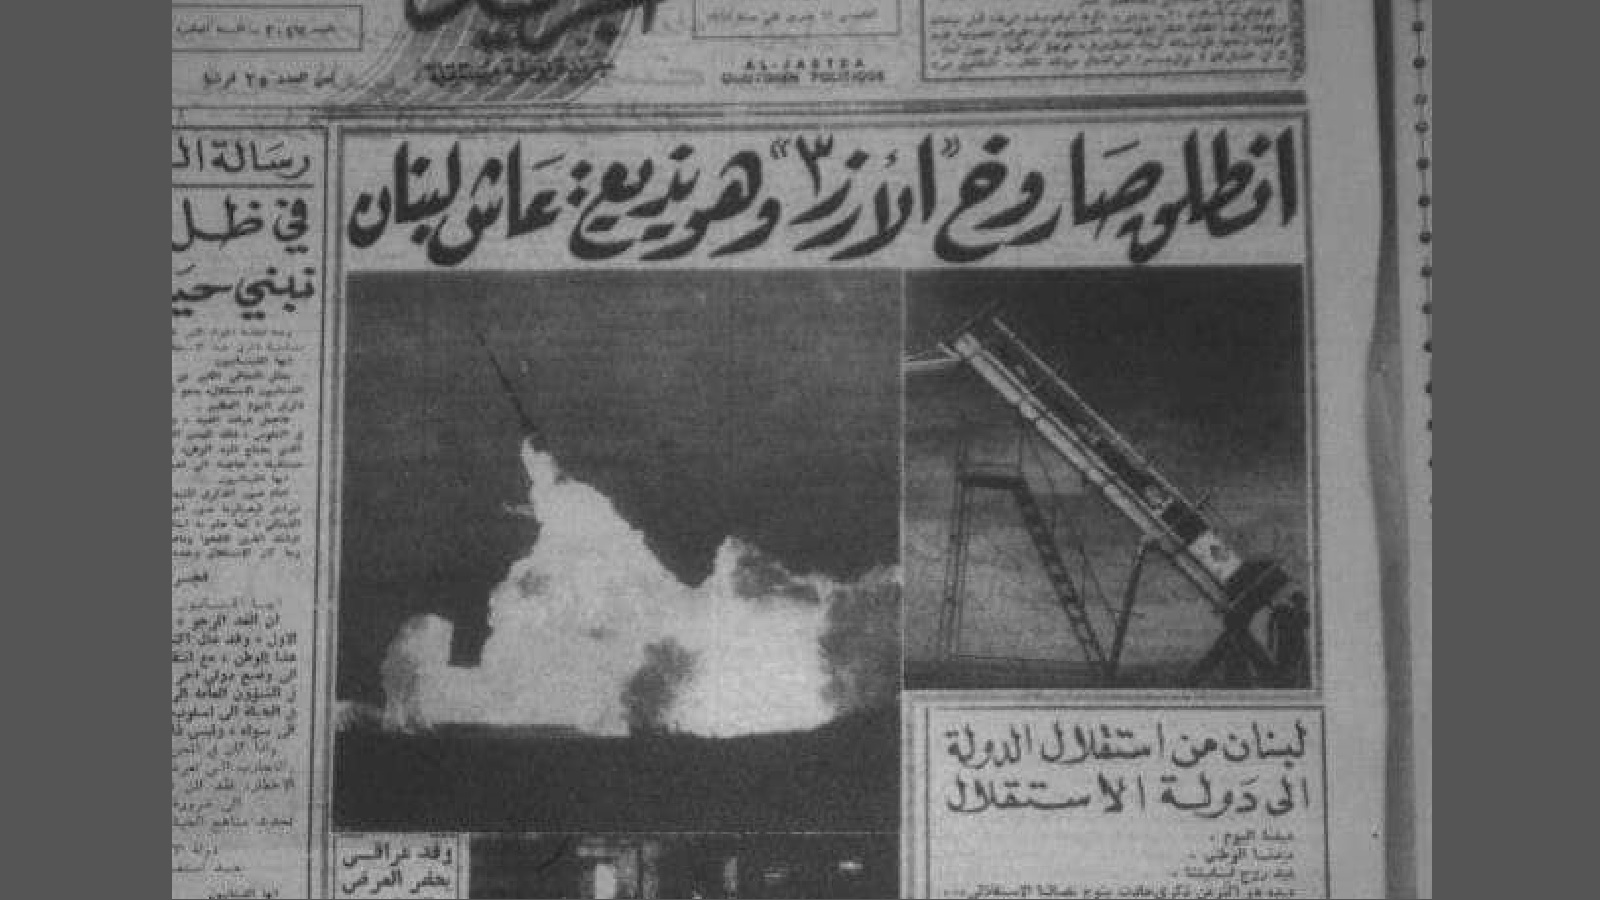 الصحف تحتفي بتجربة اطلاق صاروخ الارز الذي قطع 450 كيلومتراً